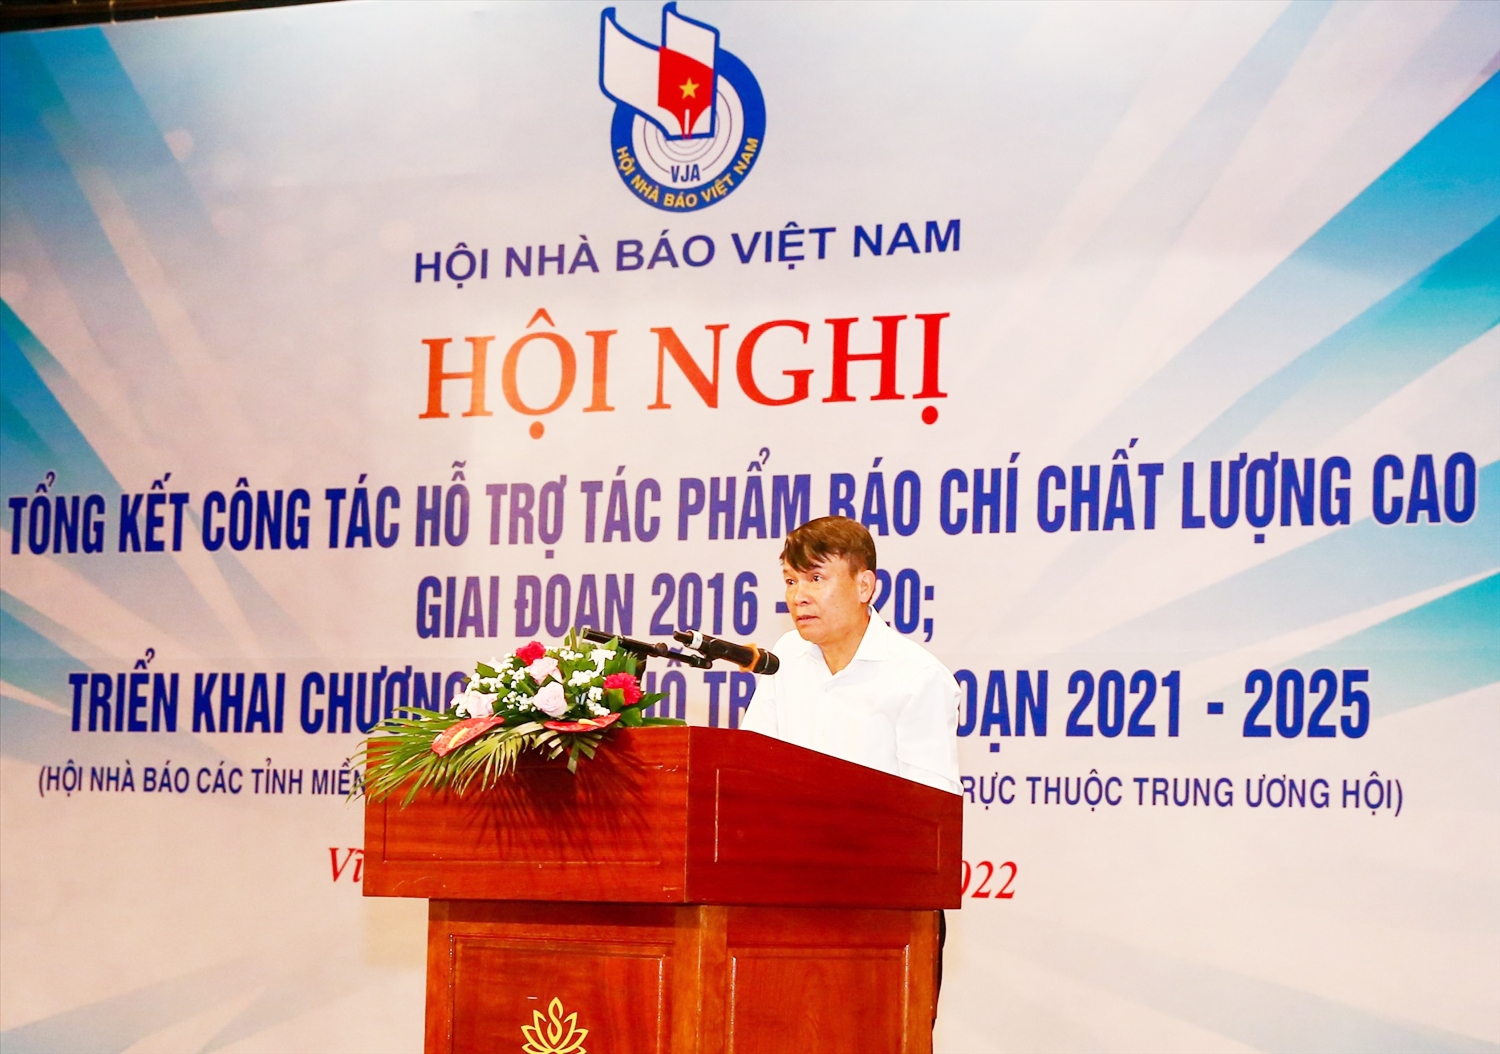 Đồng chí Nguyễn Đức Lợi - Phó Chủ tịch Thường trực Hội Nhà báo Việt Nam phát biểu khai mạc Hội nghị.